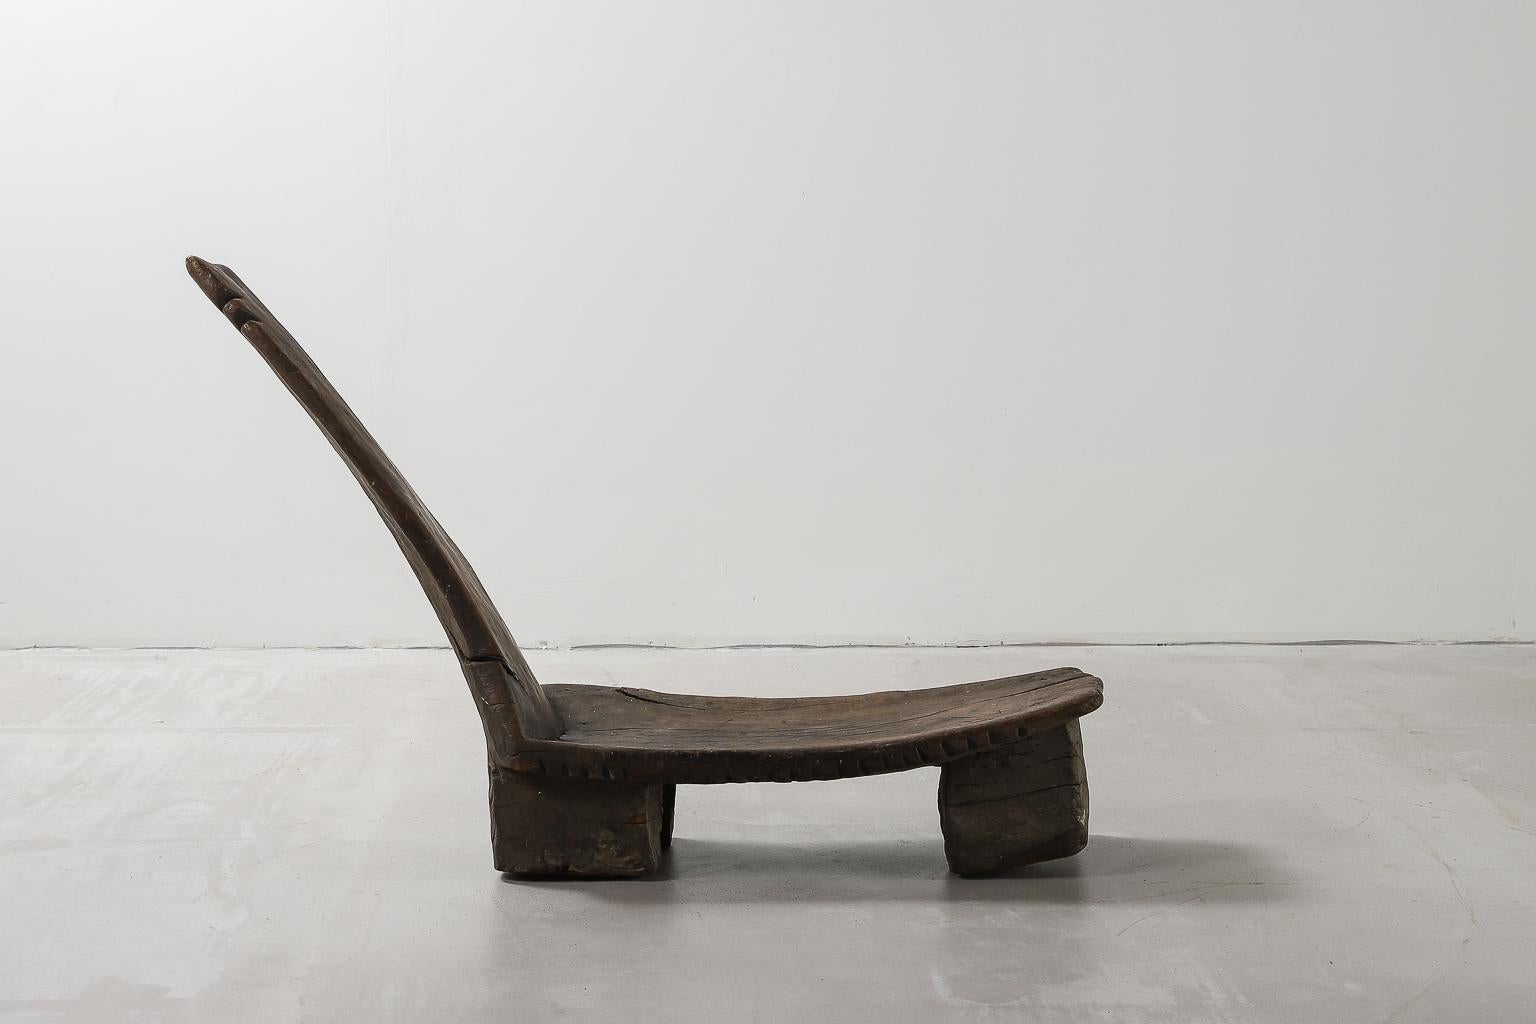 Chaise longue sculptée à la main à partir d'une seule pièce de bois dense. Magnifiques détails sculptés à la main et forme naturelle due au vieillissement du bois.